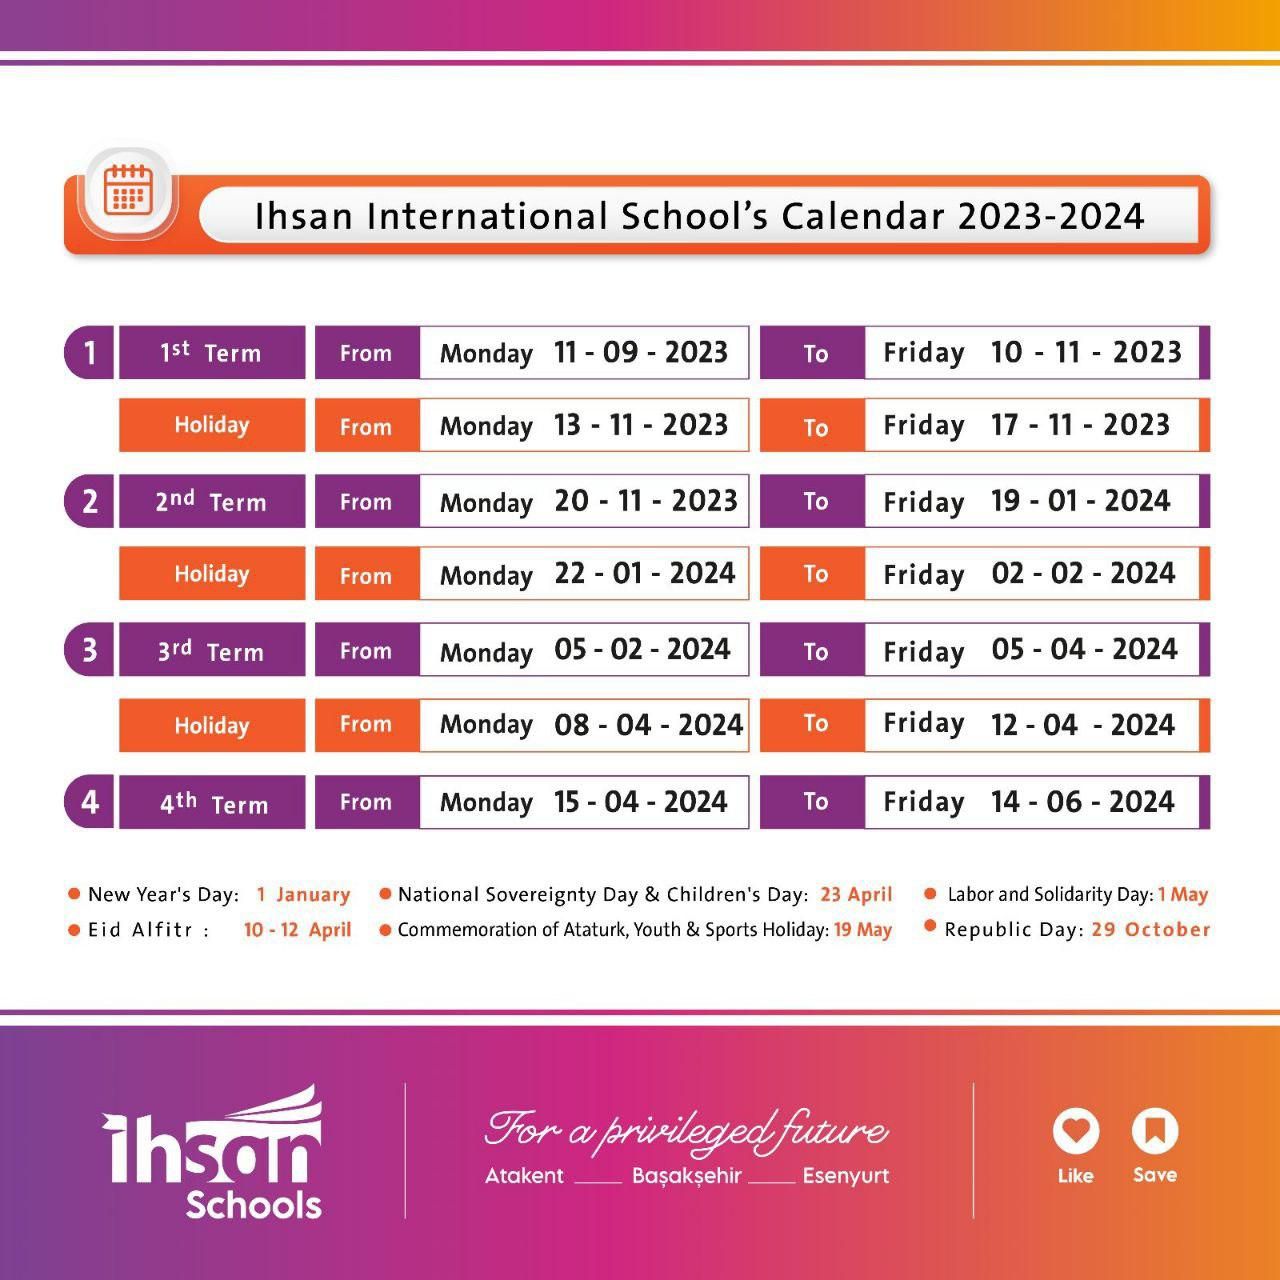 Ihsan International School's Calendar 2023 - 2024